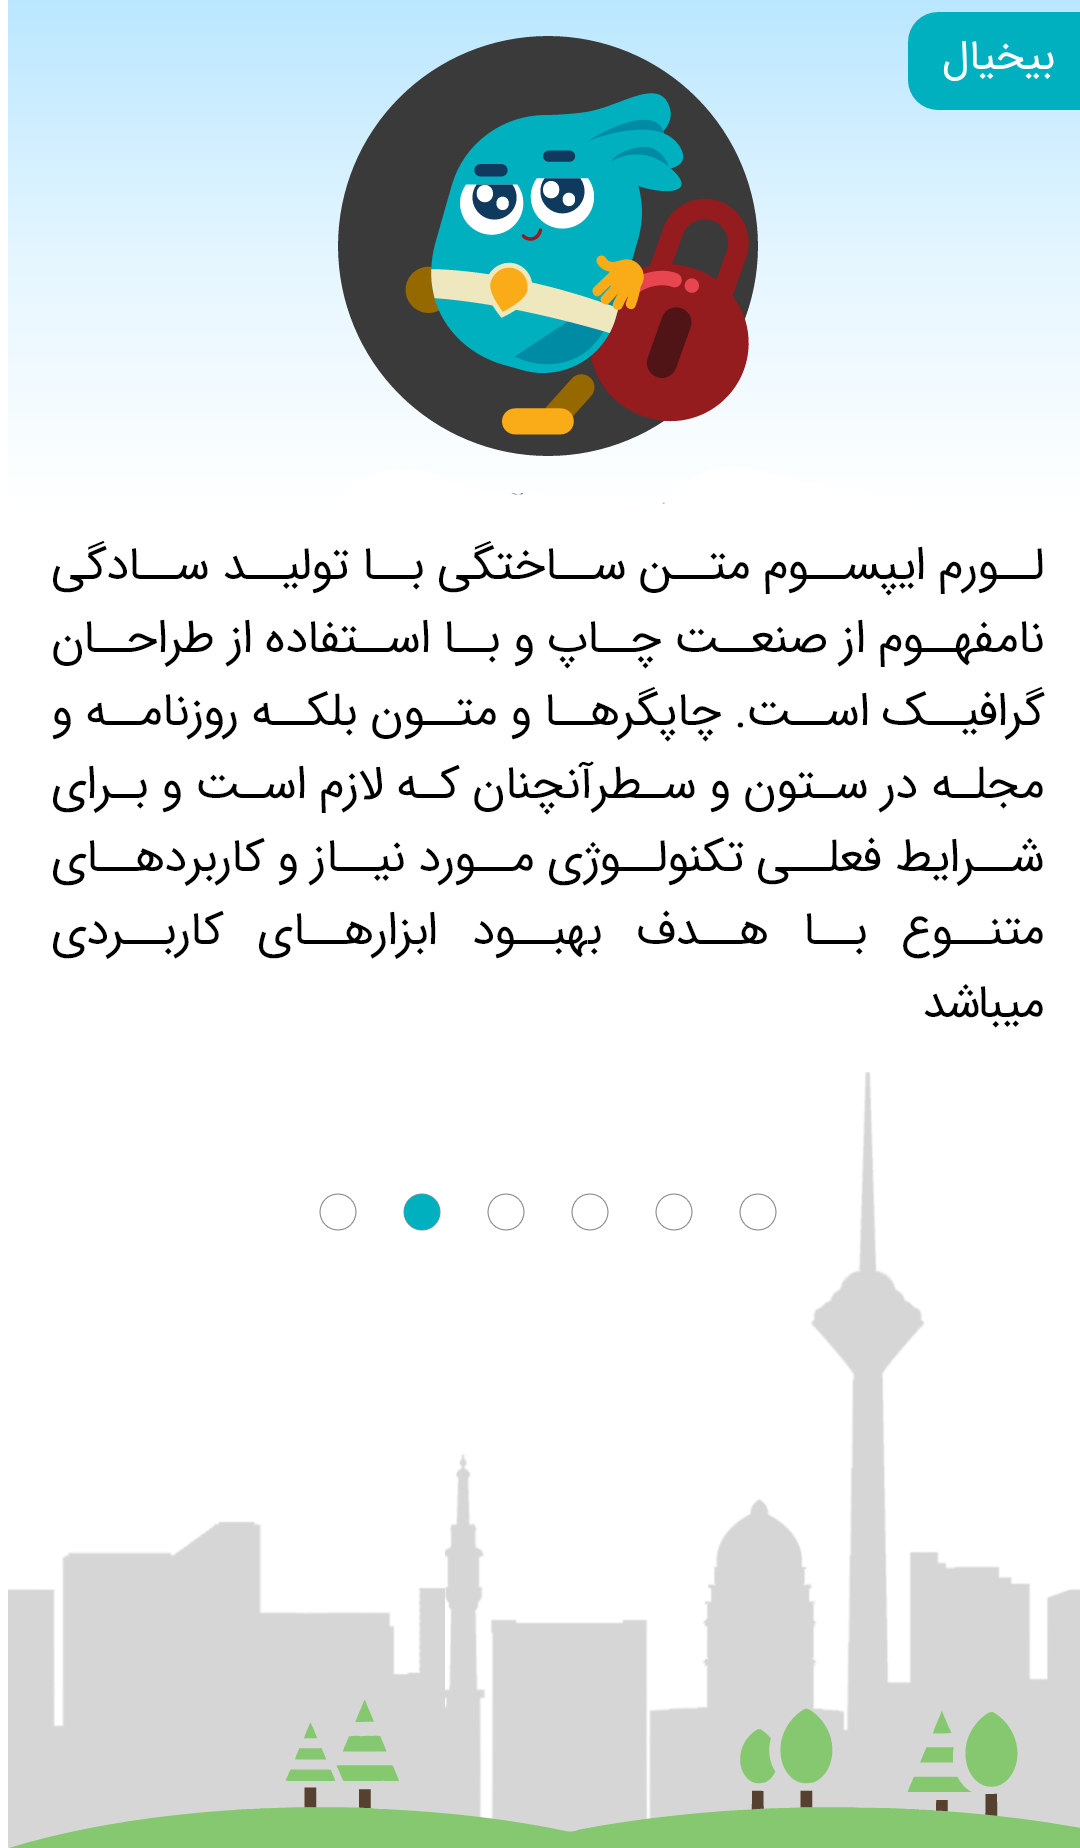 تمامی اطلاعات ارسالی و دریافتی در پیام رسان ایرانی ورتا رمزنگاری میشوند